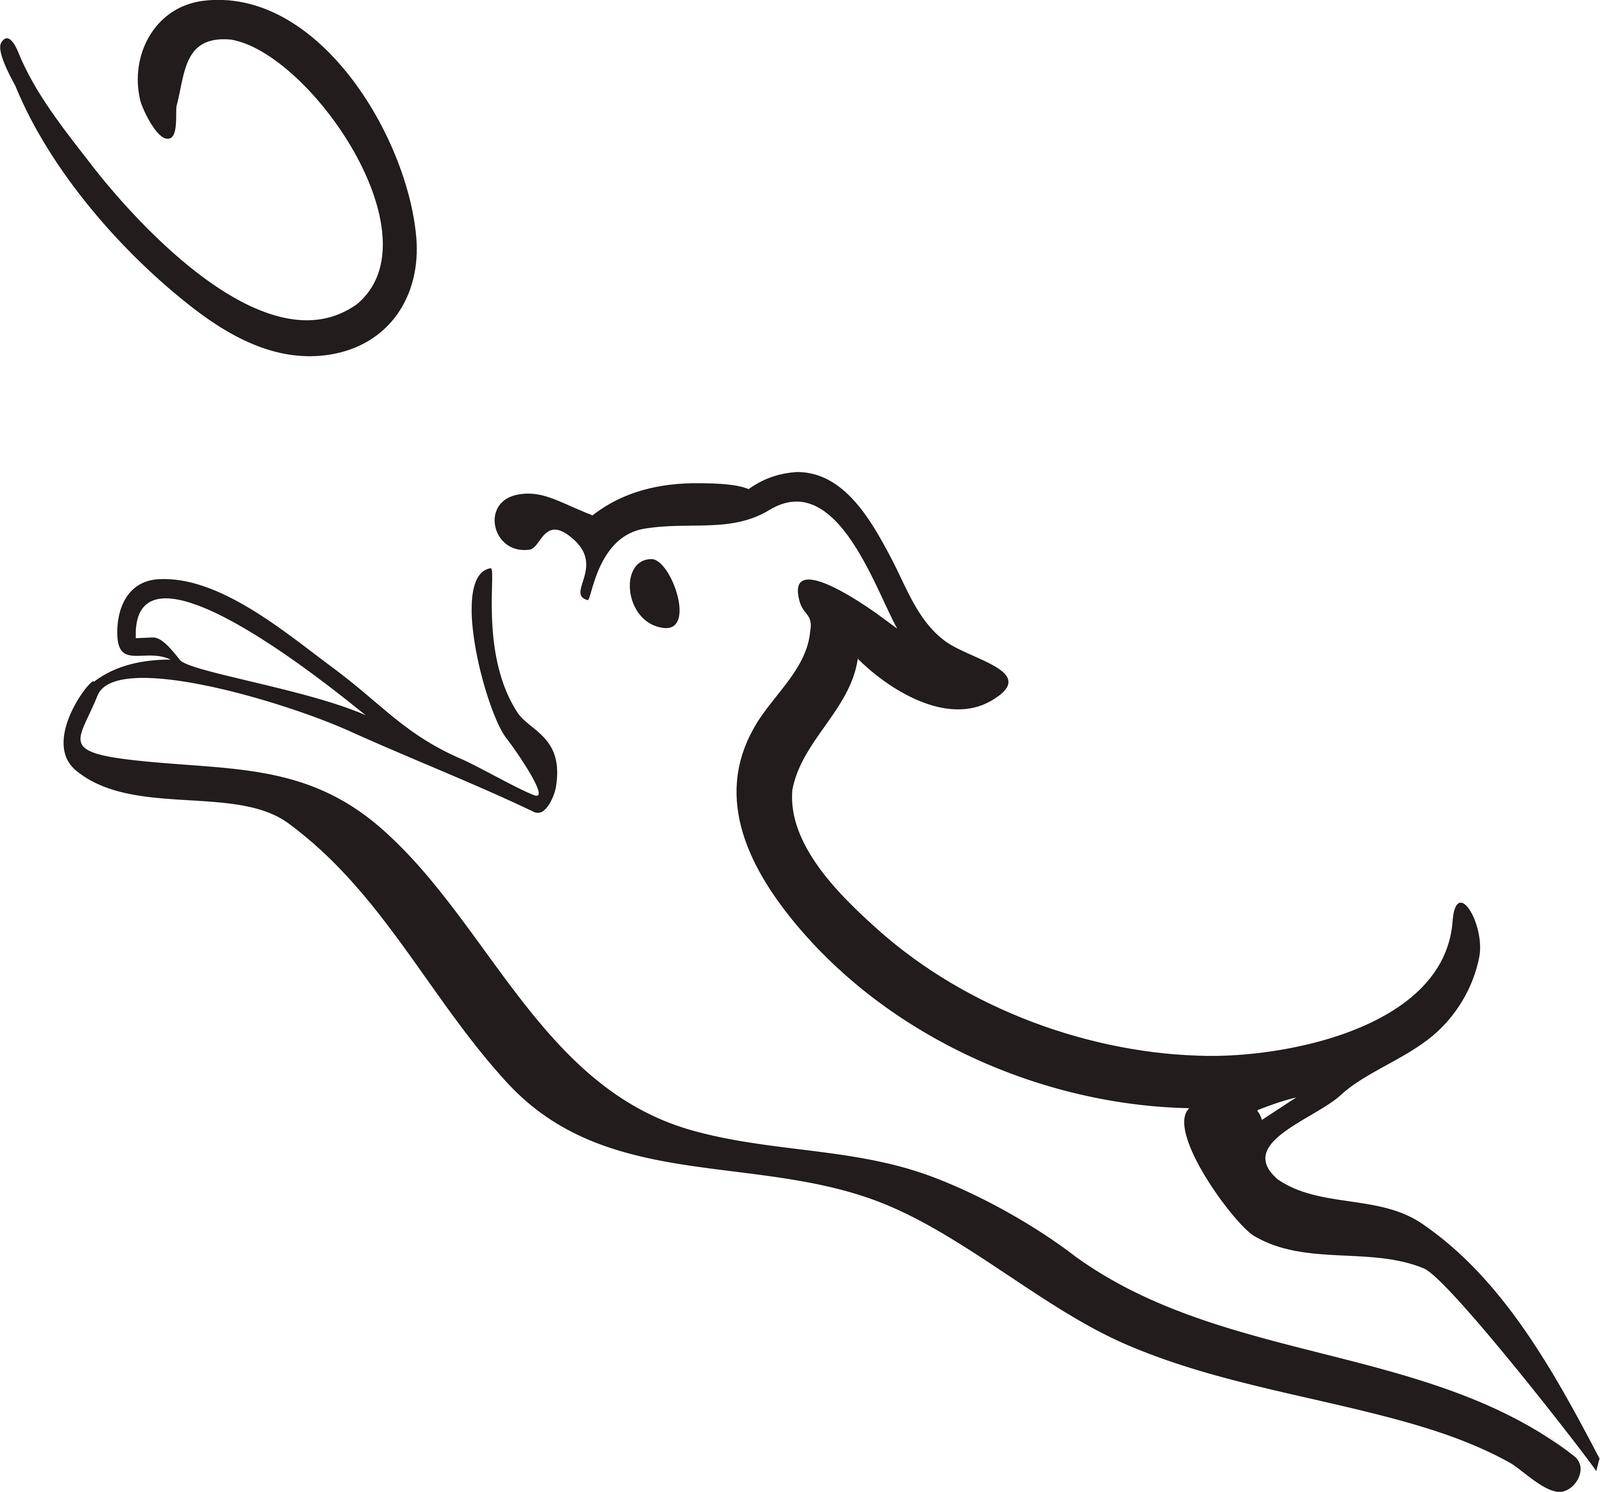 Cute dog head line art drawingvVector Illustration of Isolated Dog agility training Dog Jumping and Catching Disc. head line art drawing Silhouette on White Background.